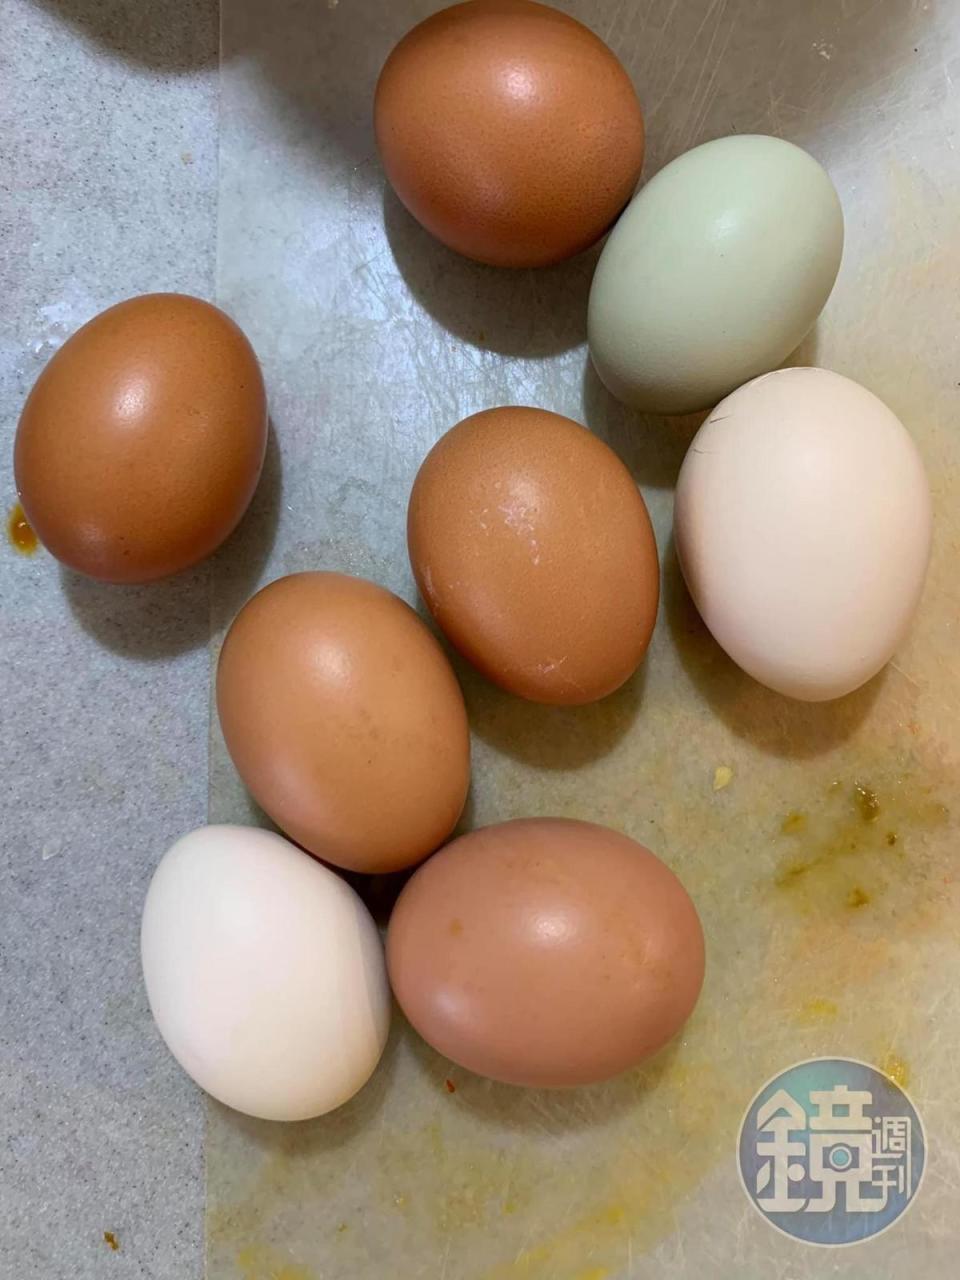 準備雞蛋8顆。